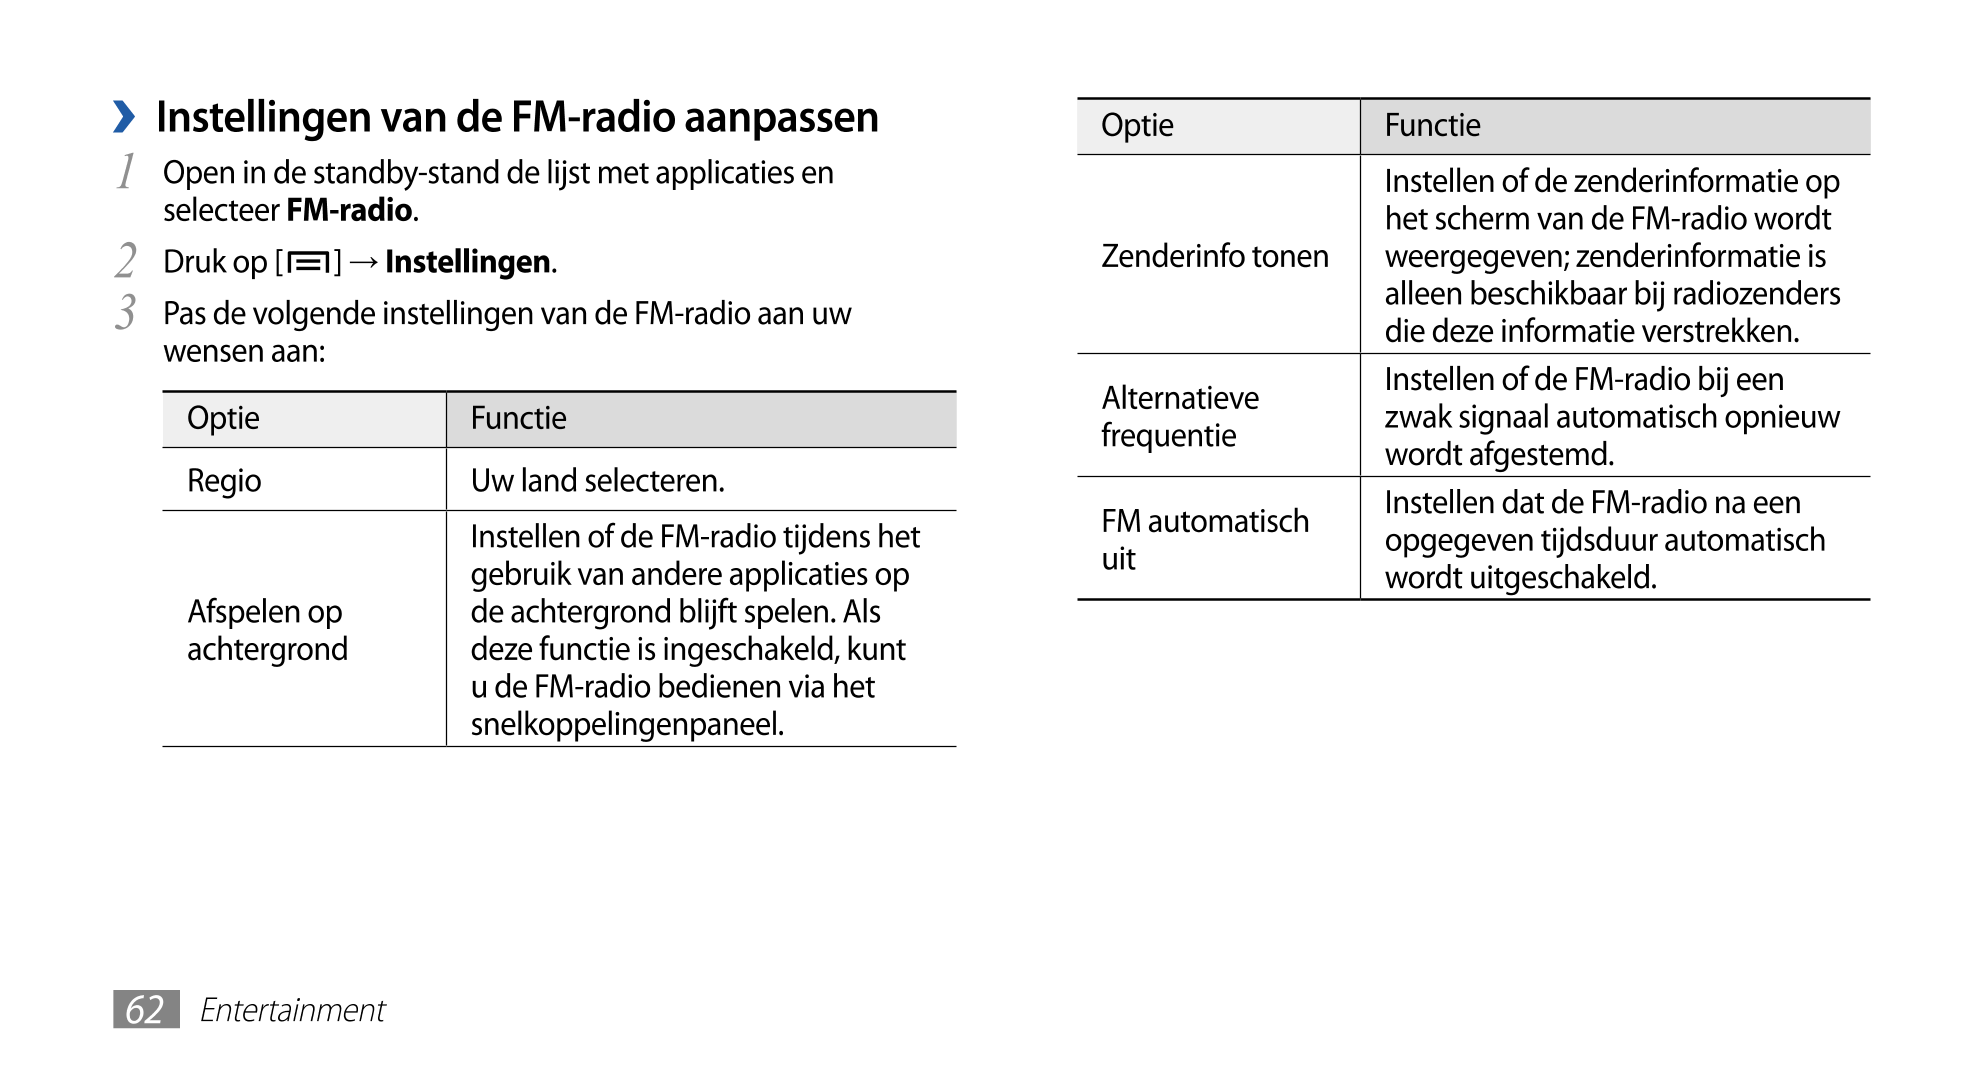   Instellingen van de FM-radio aanpassen Optie Functie
1  Open in de standby-stand de lijst met applicaties en  Instellen of de 